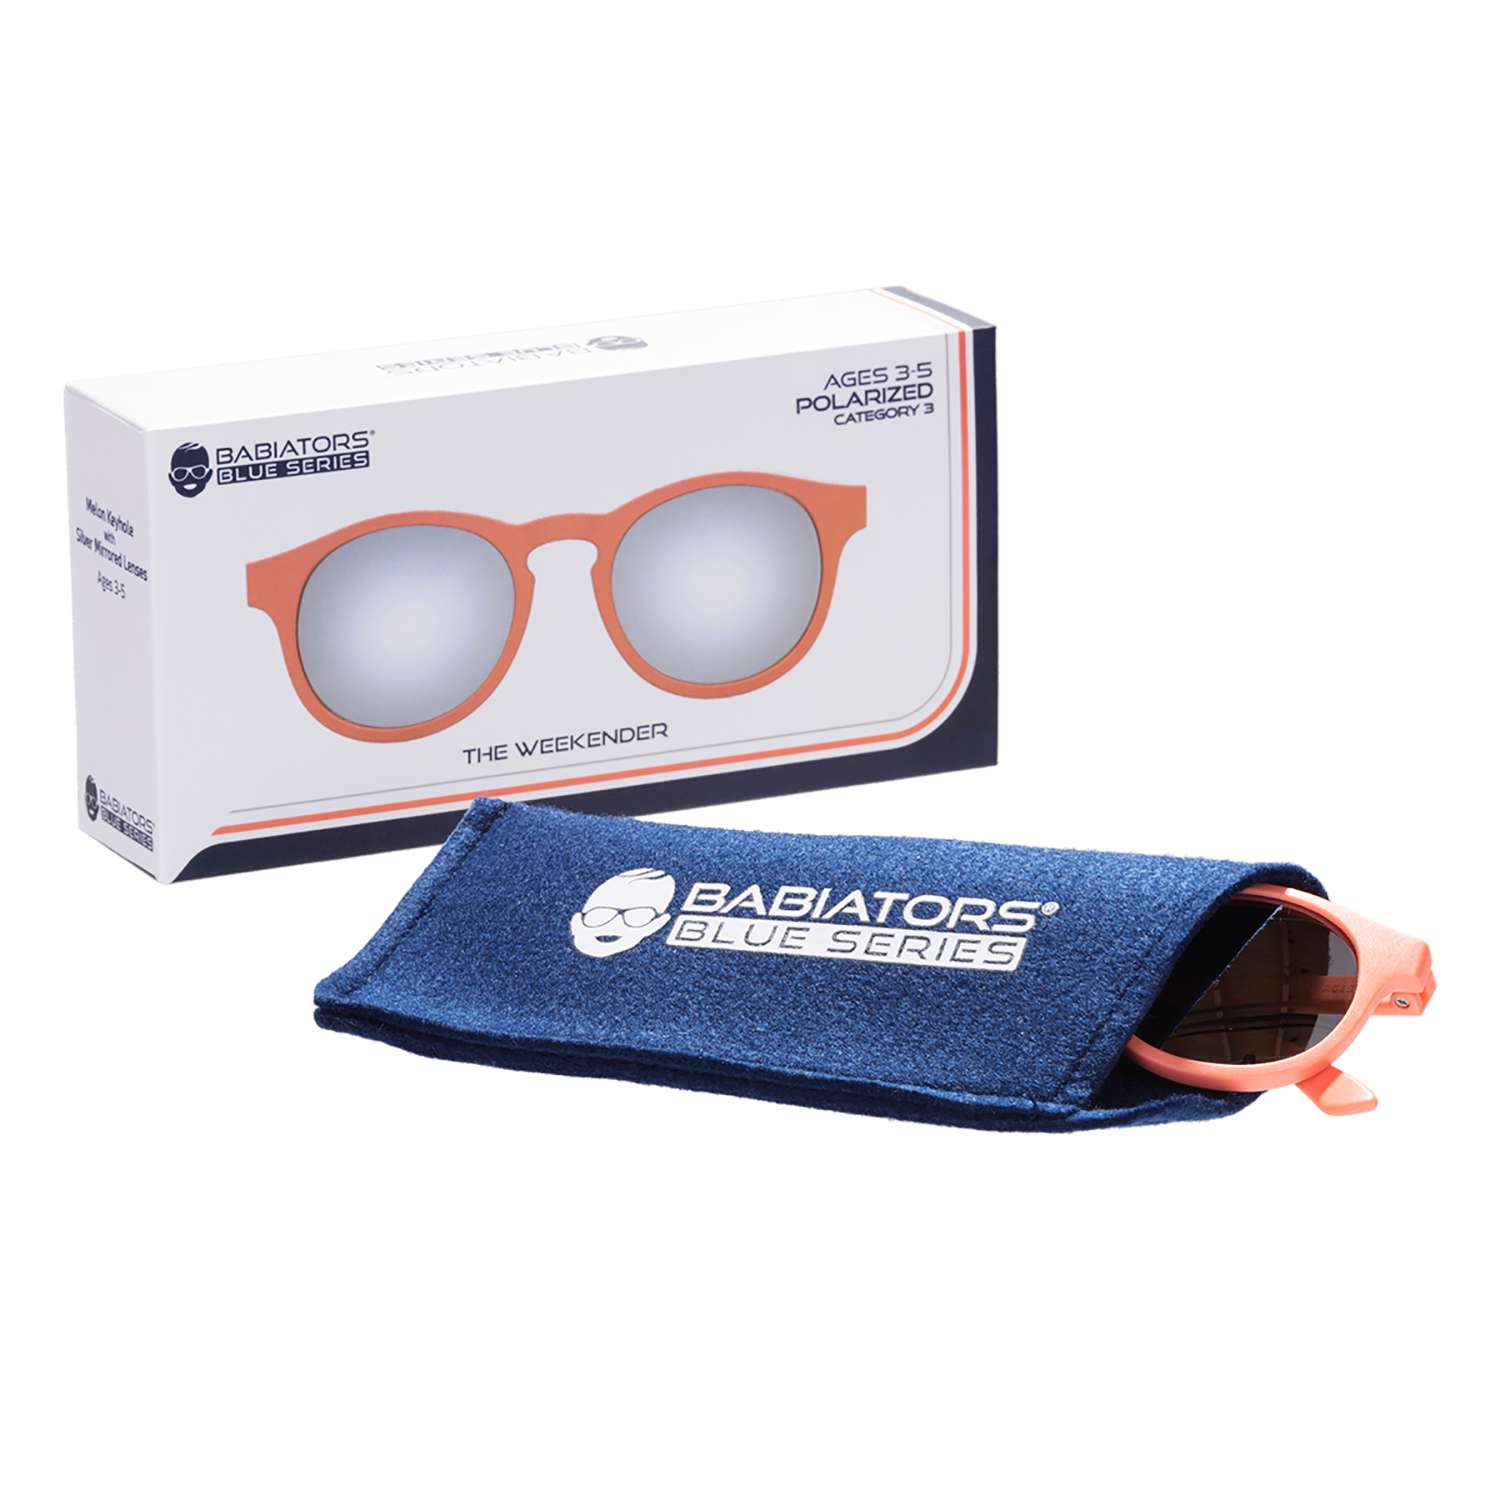 Солнцезащитные очки Babiators Blue Series Keyhole Polarized Уезжаю на выходные 3-5 BLU-008 - фото 9